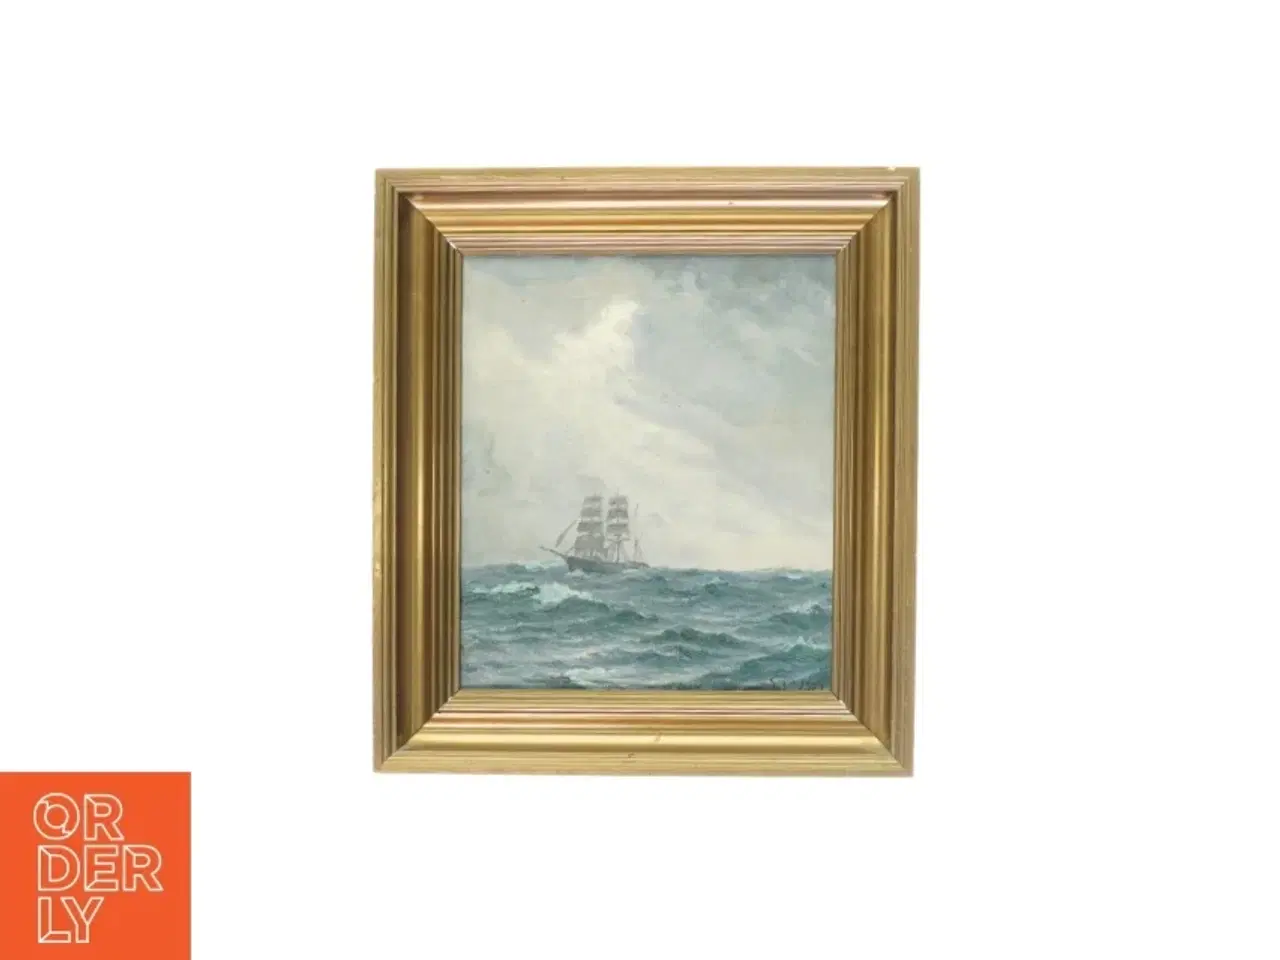 Billede 1 - Billede, skibsportræt (str. 24 x 28 cm)